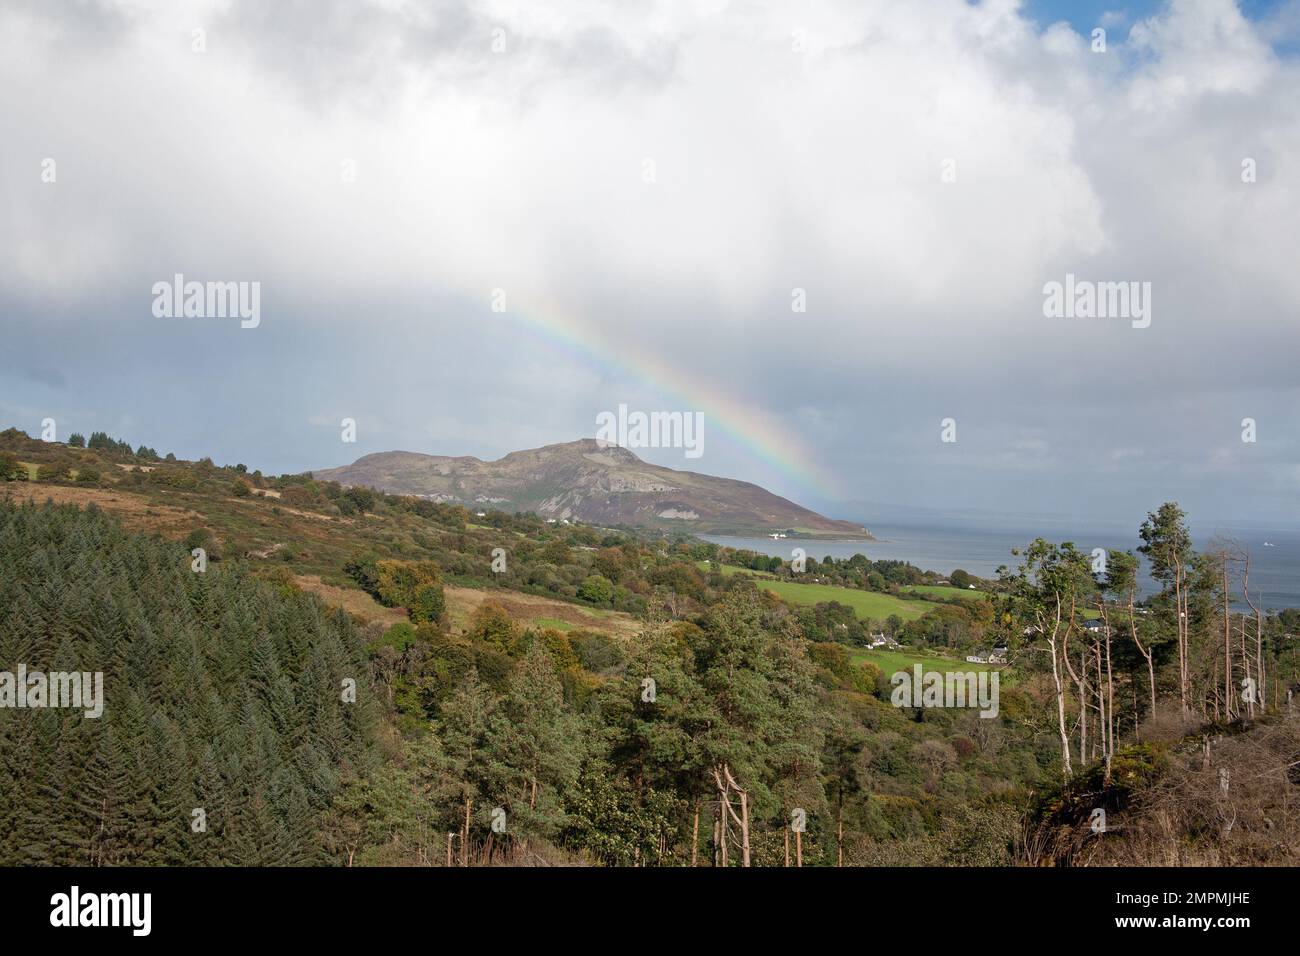 Rainbow Holy Island vista desde cerca de los Giants Graves sobre Whiting Bay la isla de Arran Ayrshire Escocia Foto de stock